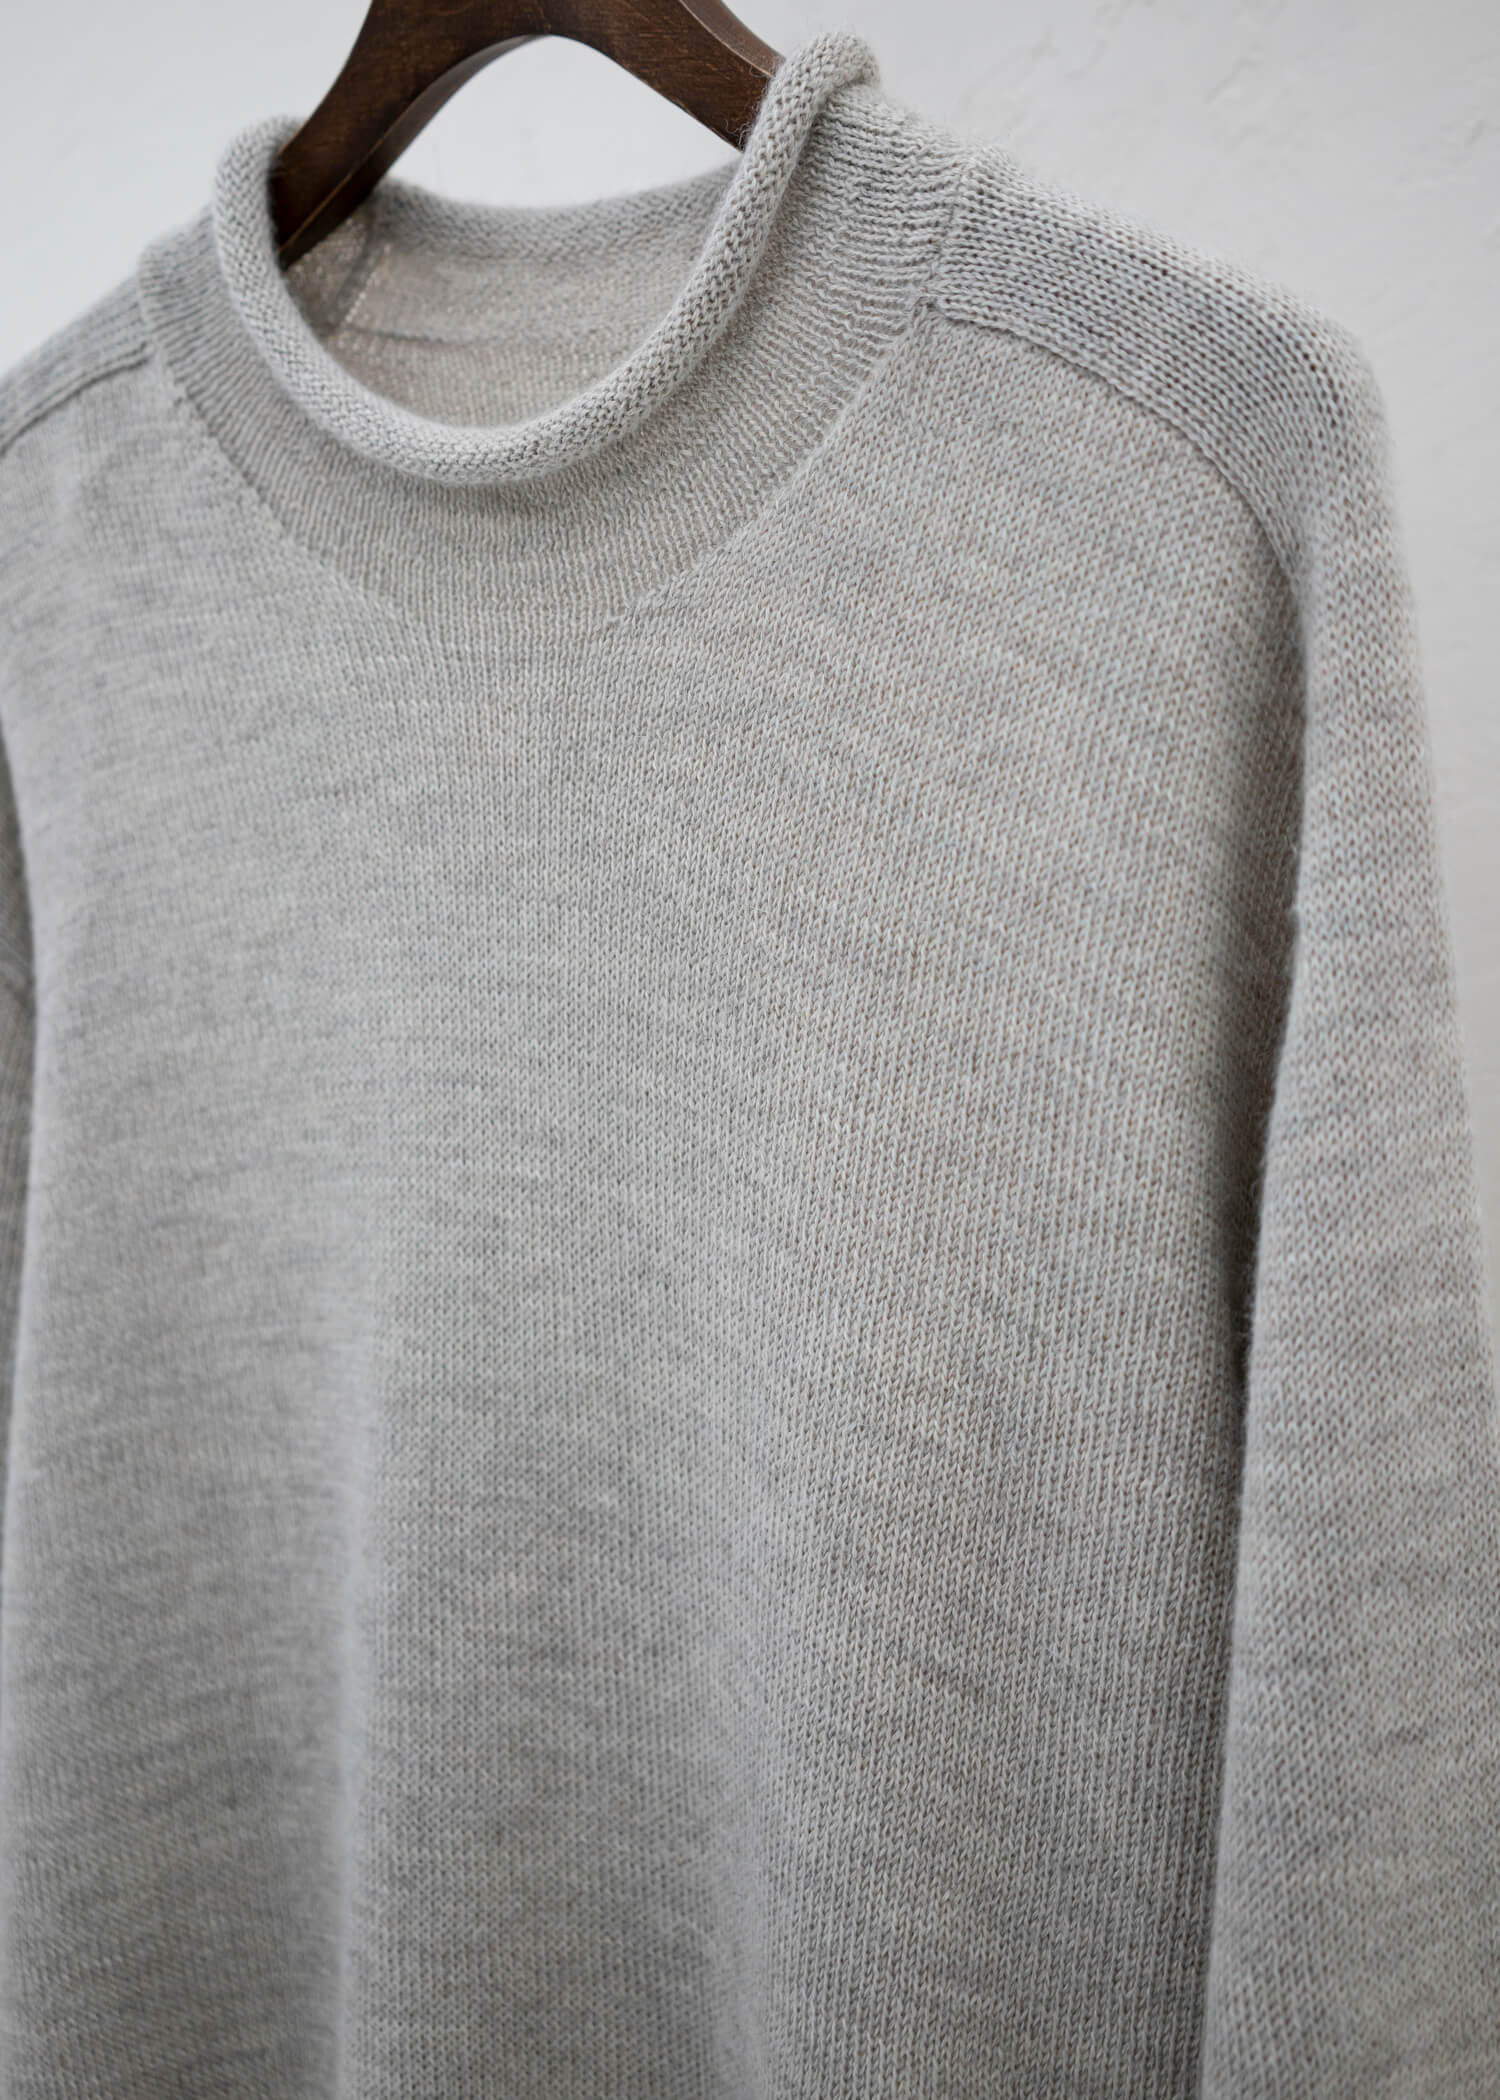 Jurgen Lehl Baby llama pullover knit Grey